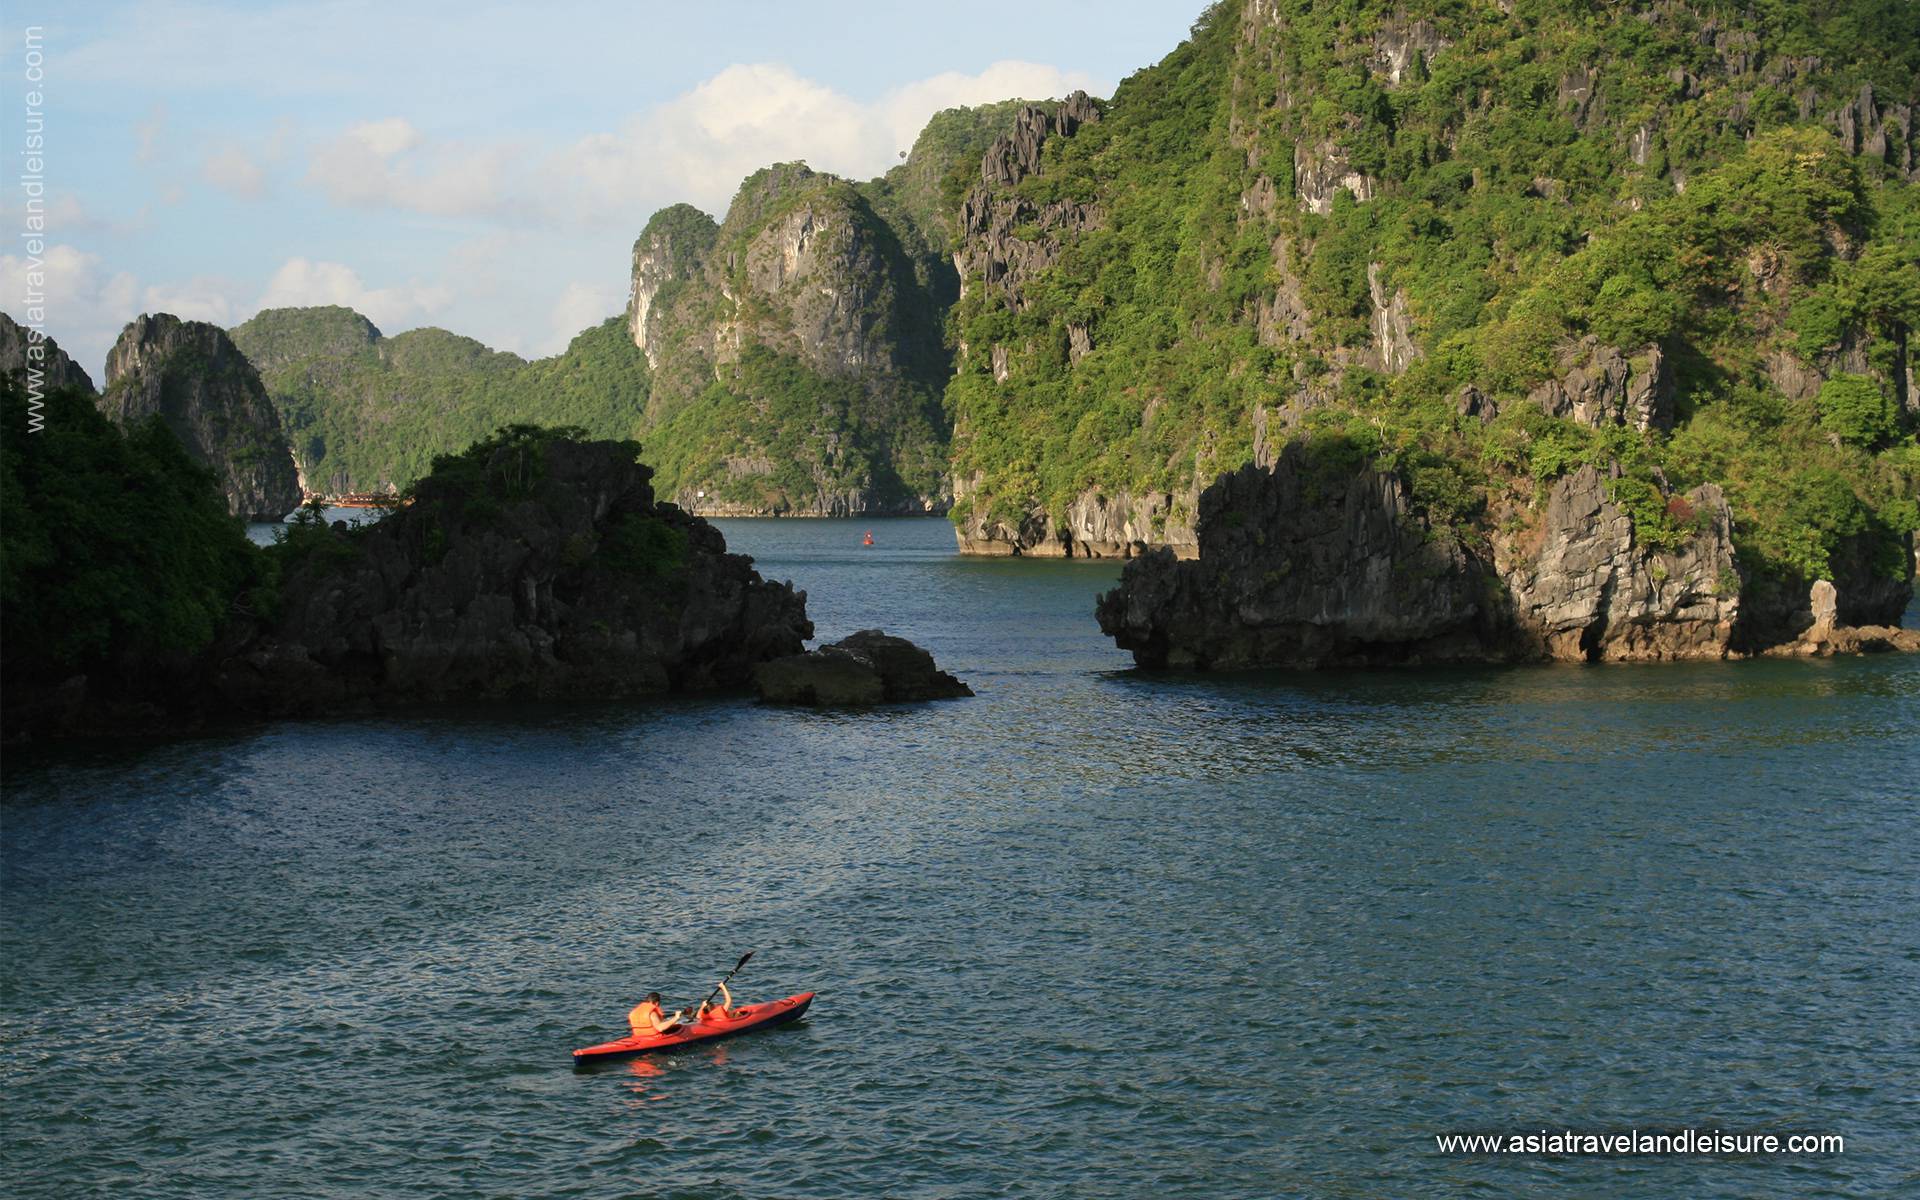 kayaking in Halong Bay